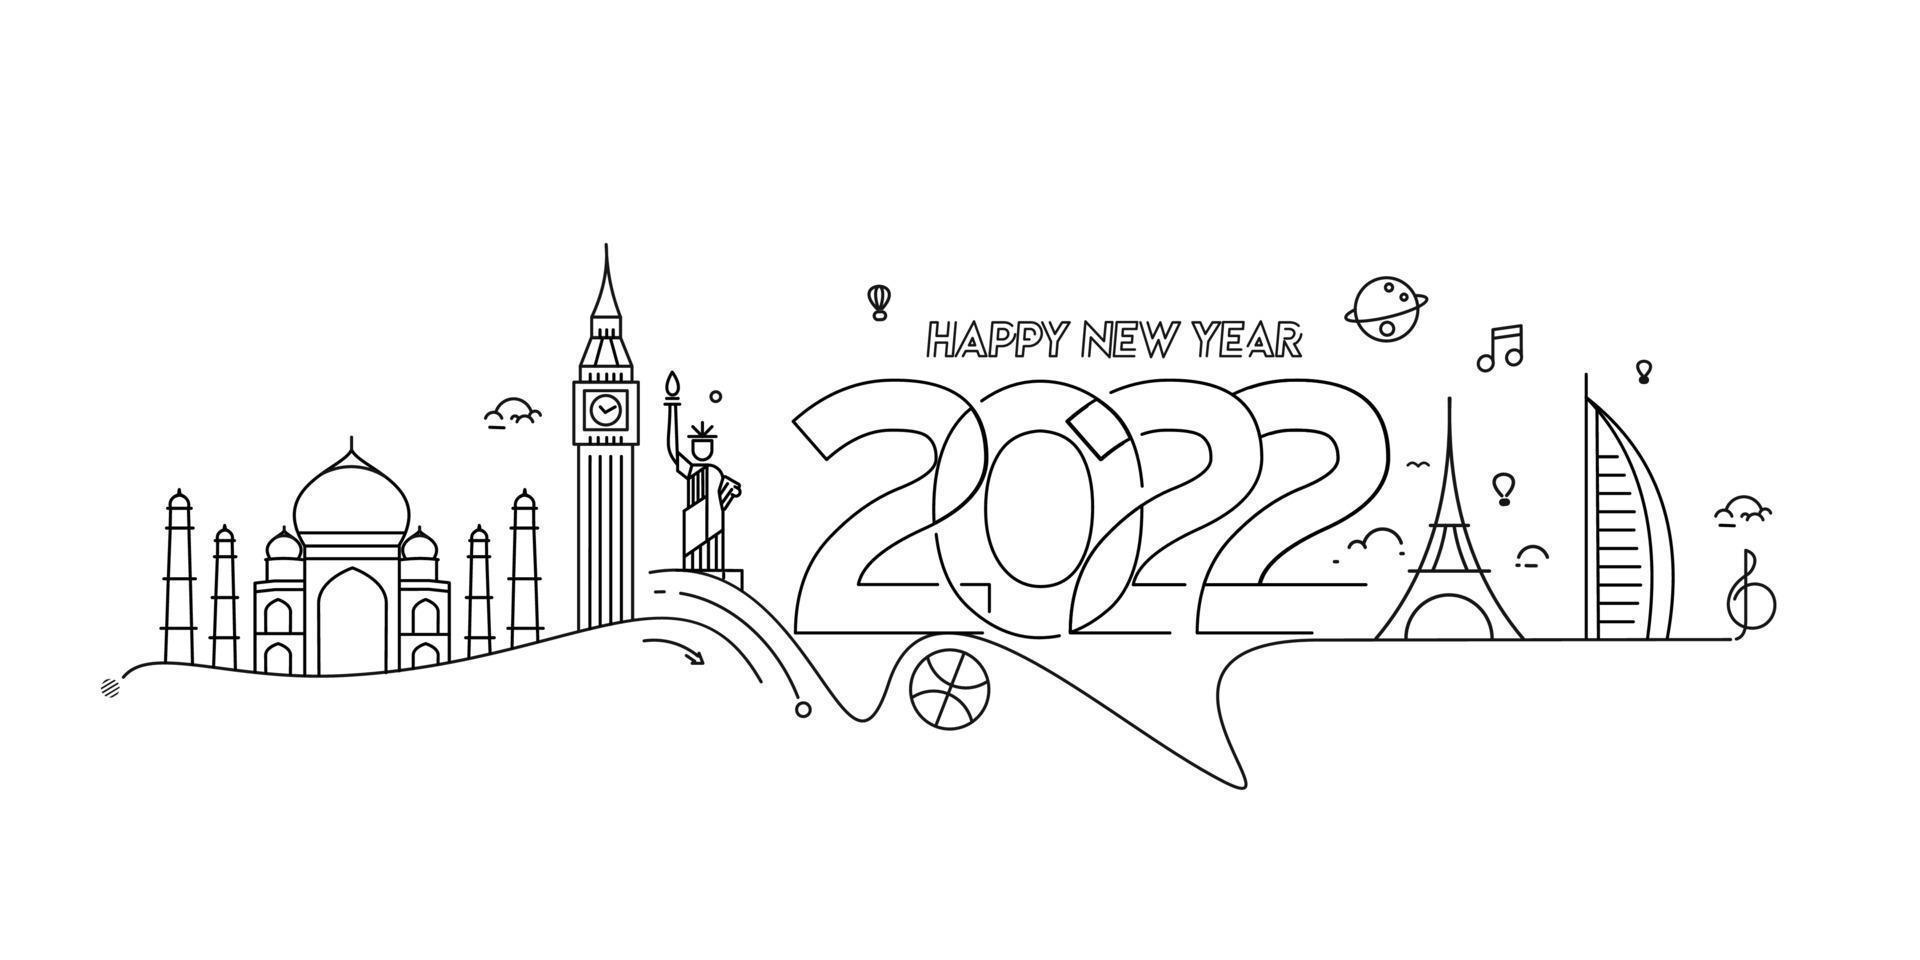 feliz ano novo 2022 texto com viagens mundial design patter, ilustração vetorial. vetor